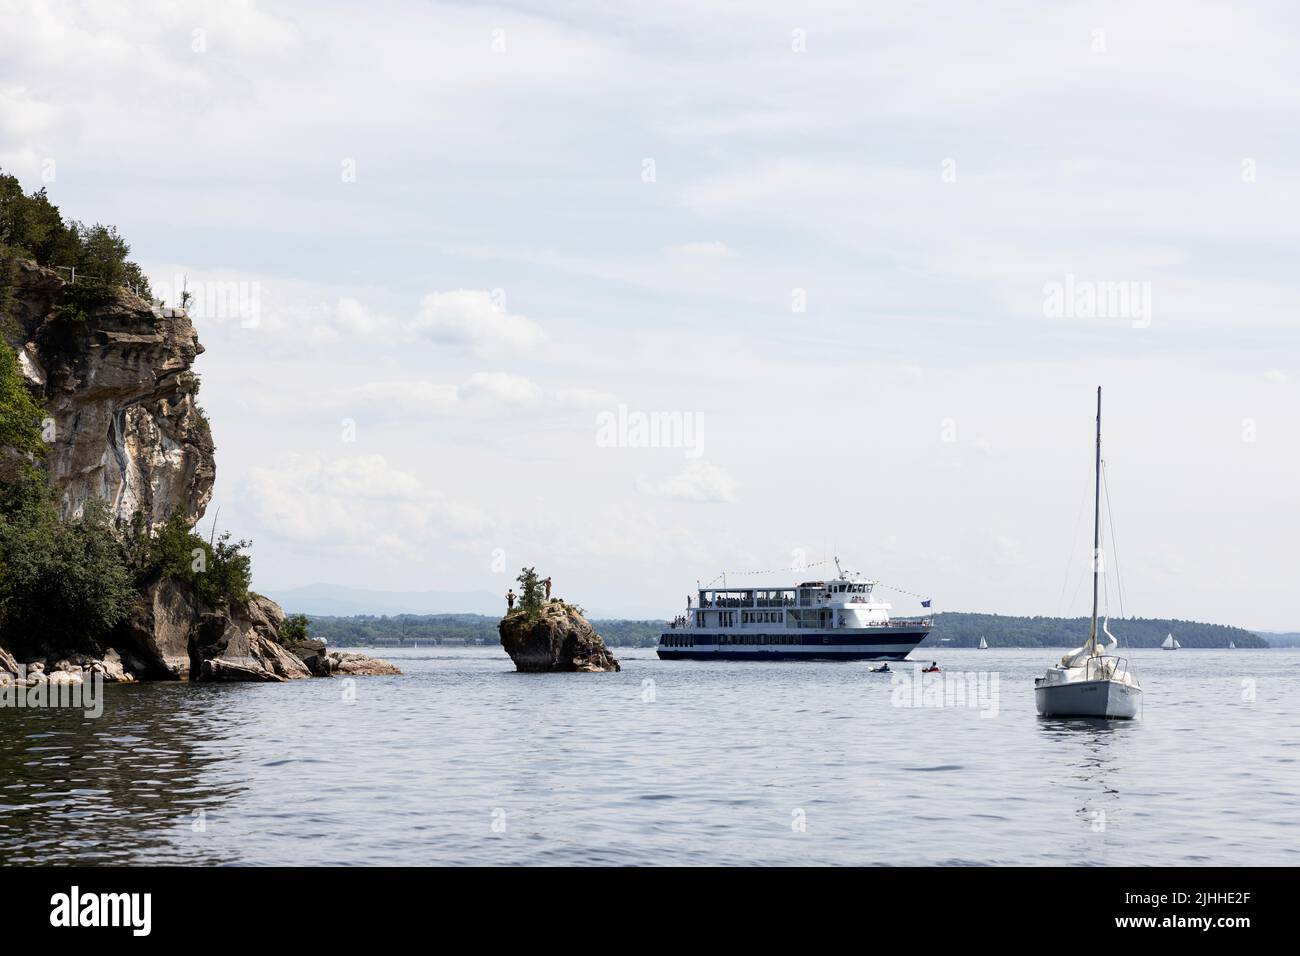 El barco de crucero turístico Spirit of Ethan Allen y un velero por Lone Rock Point en el lago Champlain en Burlington, Vermont, EE.UU. Foto de stock